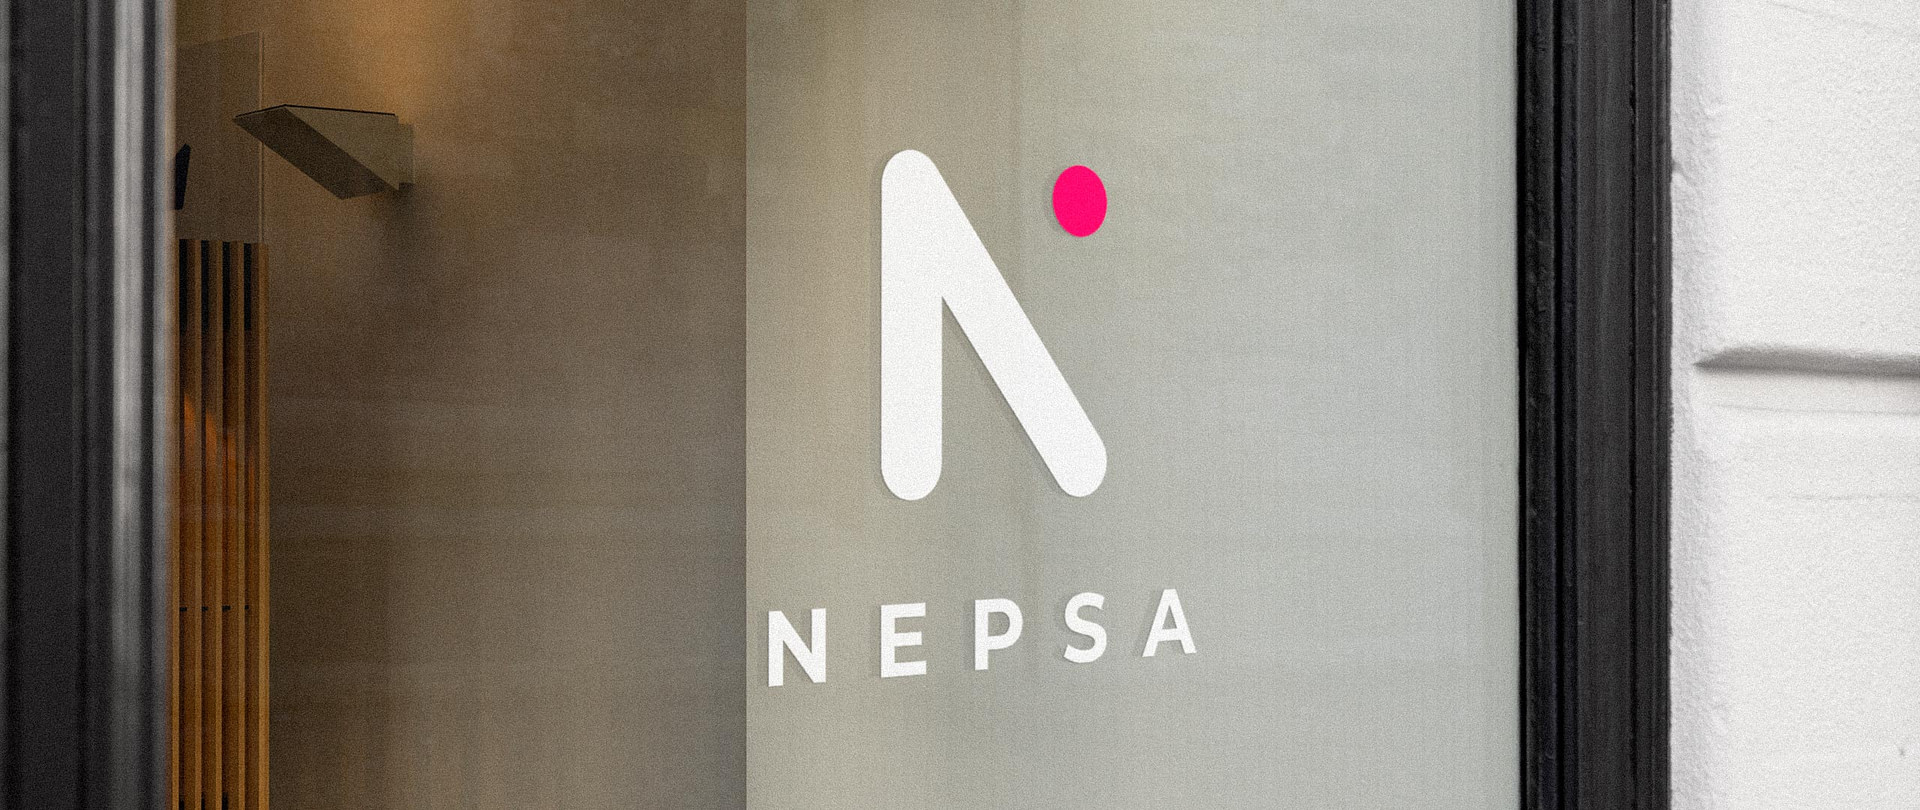 Logotype de NEPSA réalisé par TMKL posé sur une vitrine